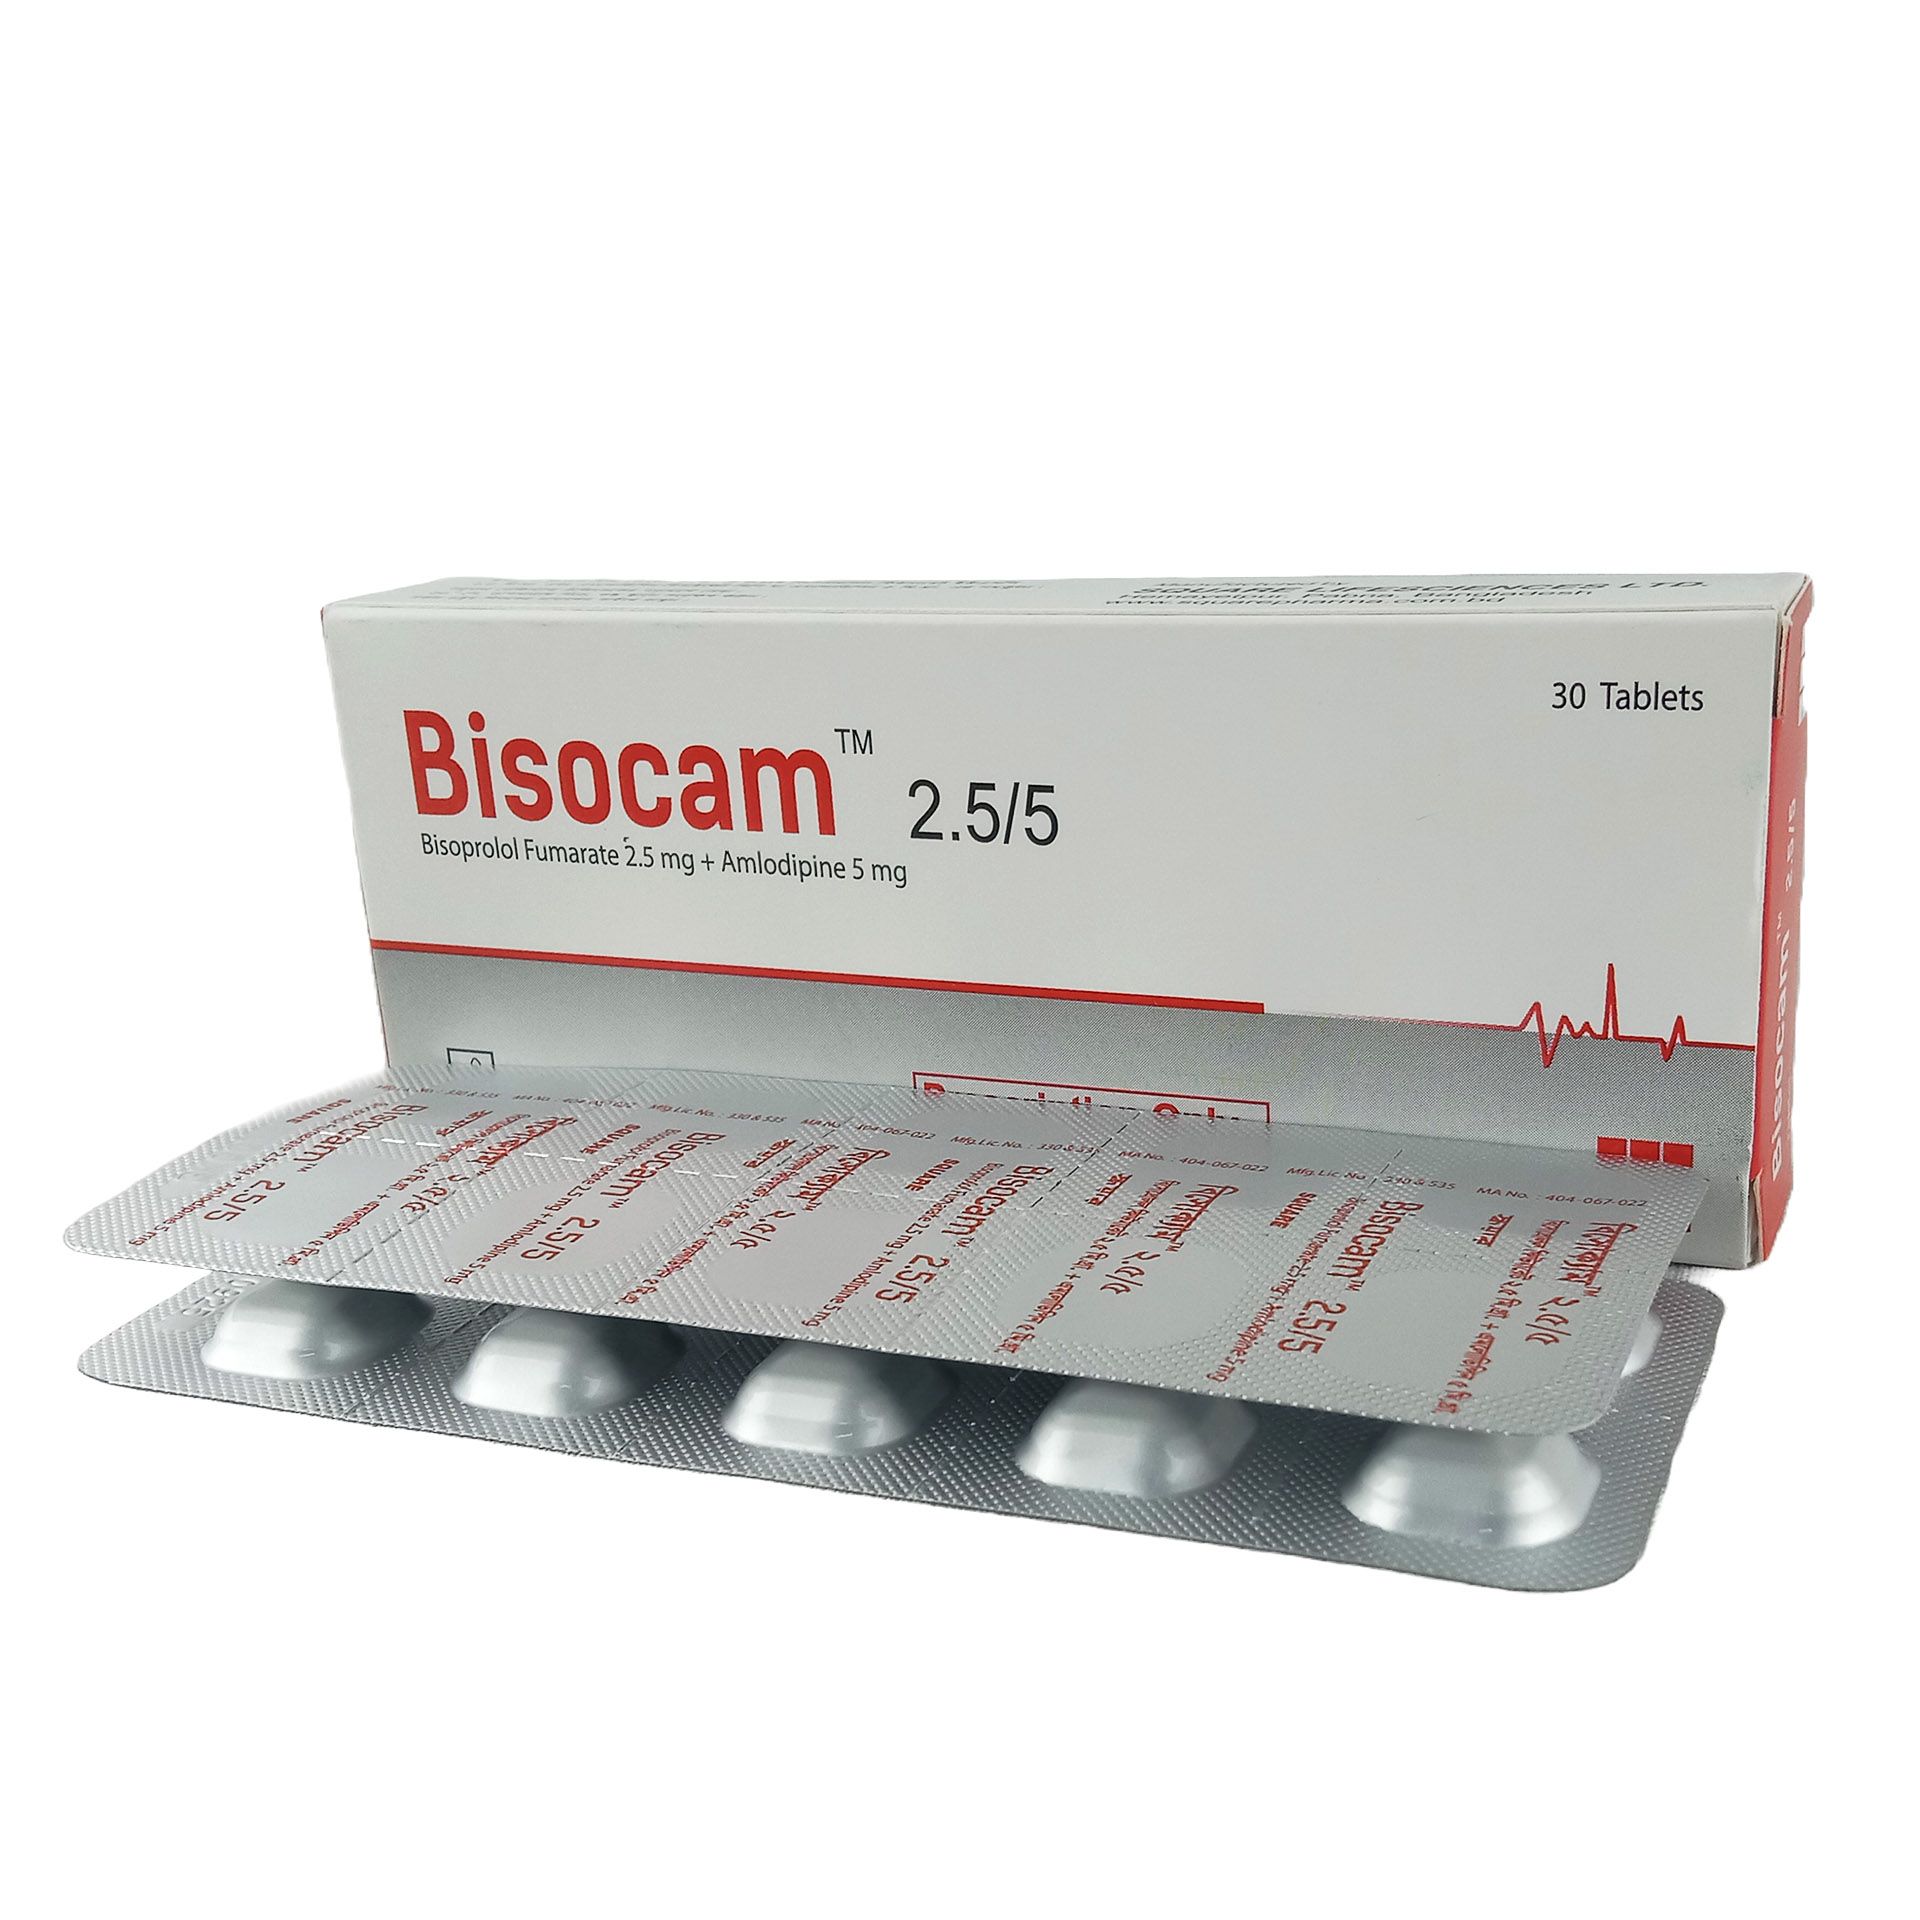 Bisocam 2.5/5 2.5mg+5mg Tablet